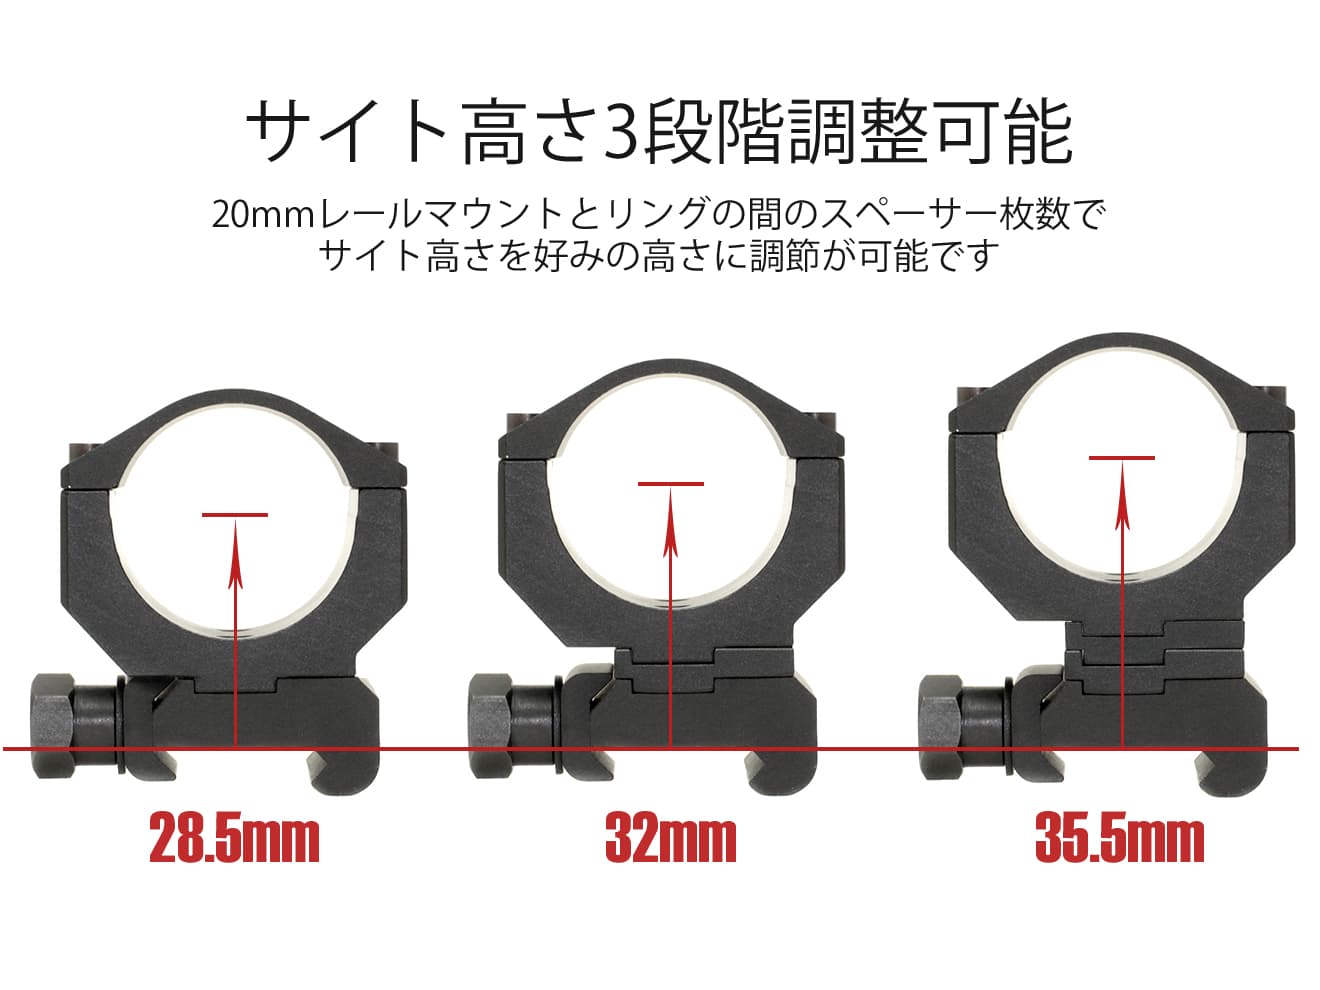 G&P KACタイプ アジャスタブル 30mm リングマウント for 20mmレール [ブラック / サンド]